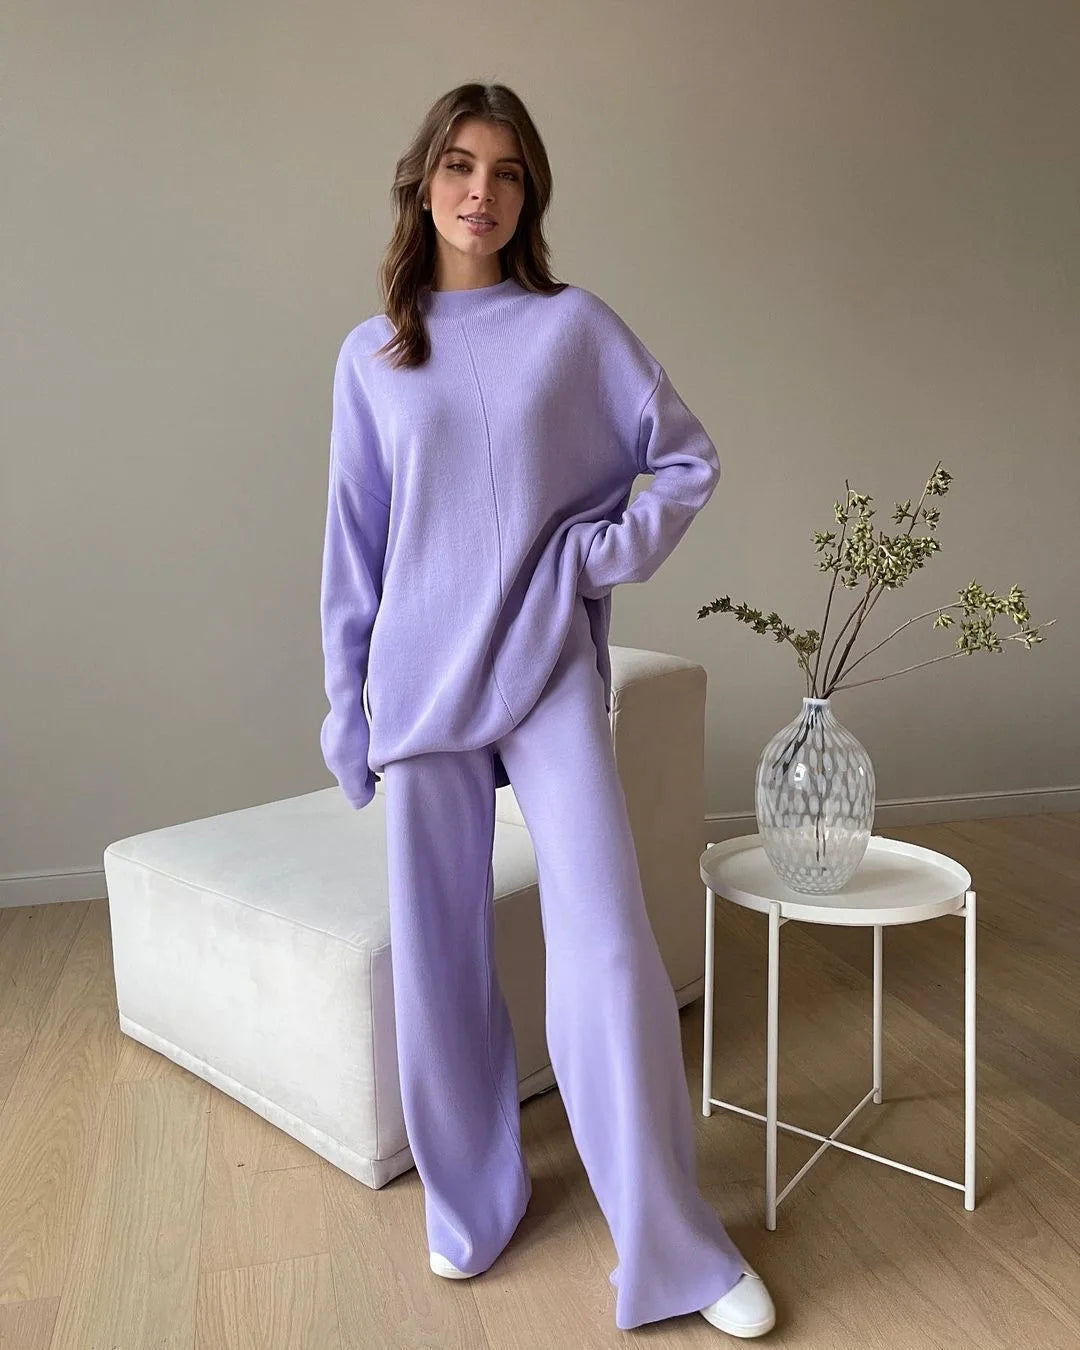 Knitted 2 piece turtleneck sweater wide leg pants sleepwear set women loungewear indoors cozy outfit